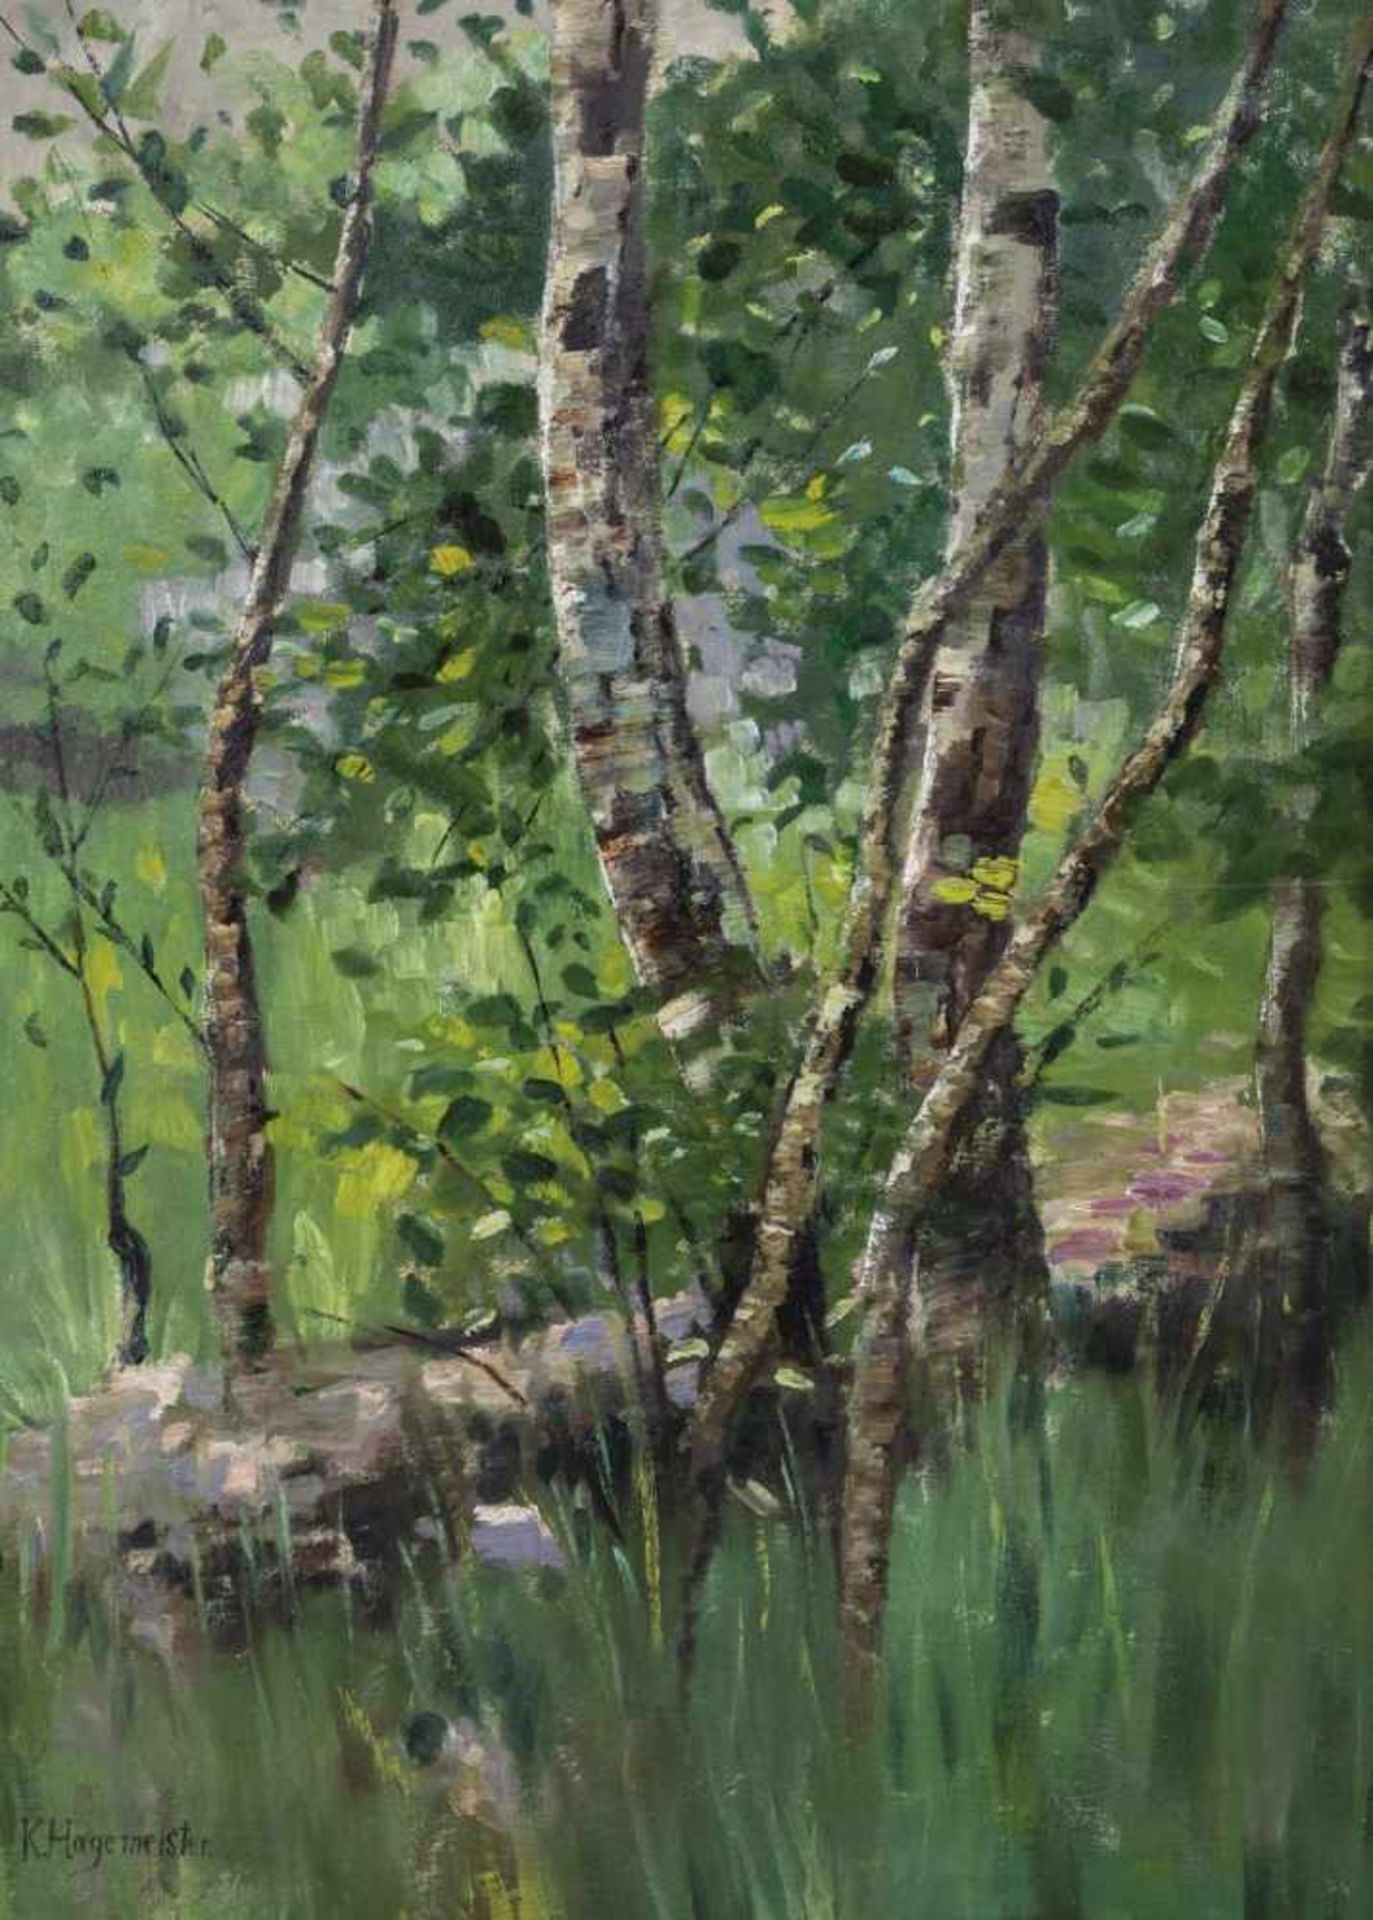 Karl Hagemeister. 1848 Werder - 1933 ibid. Birches by the stream. Oil on canvas. Signedlower left.